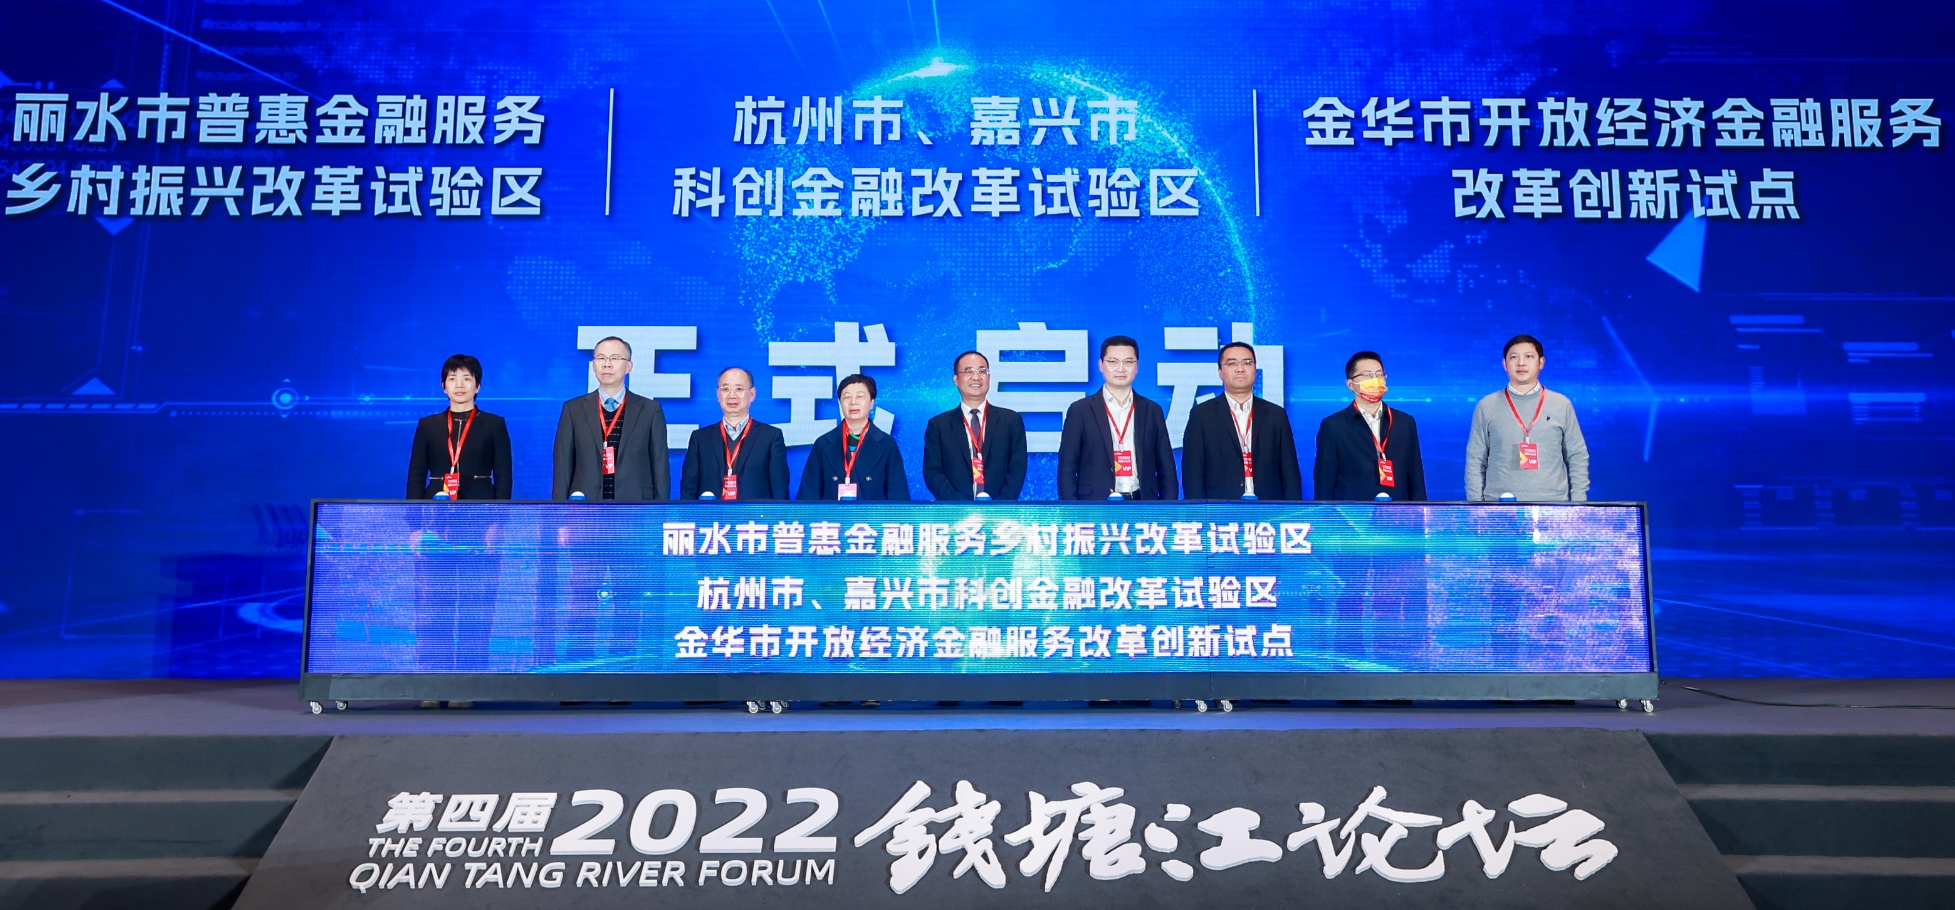 第四届（2022）钱塘江论坛在杭州举办